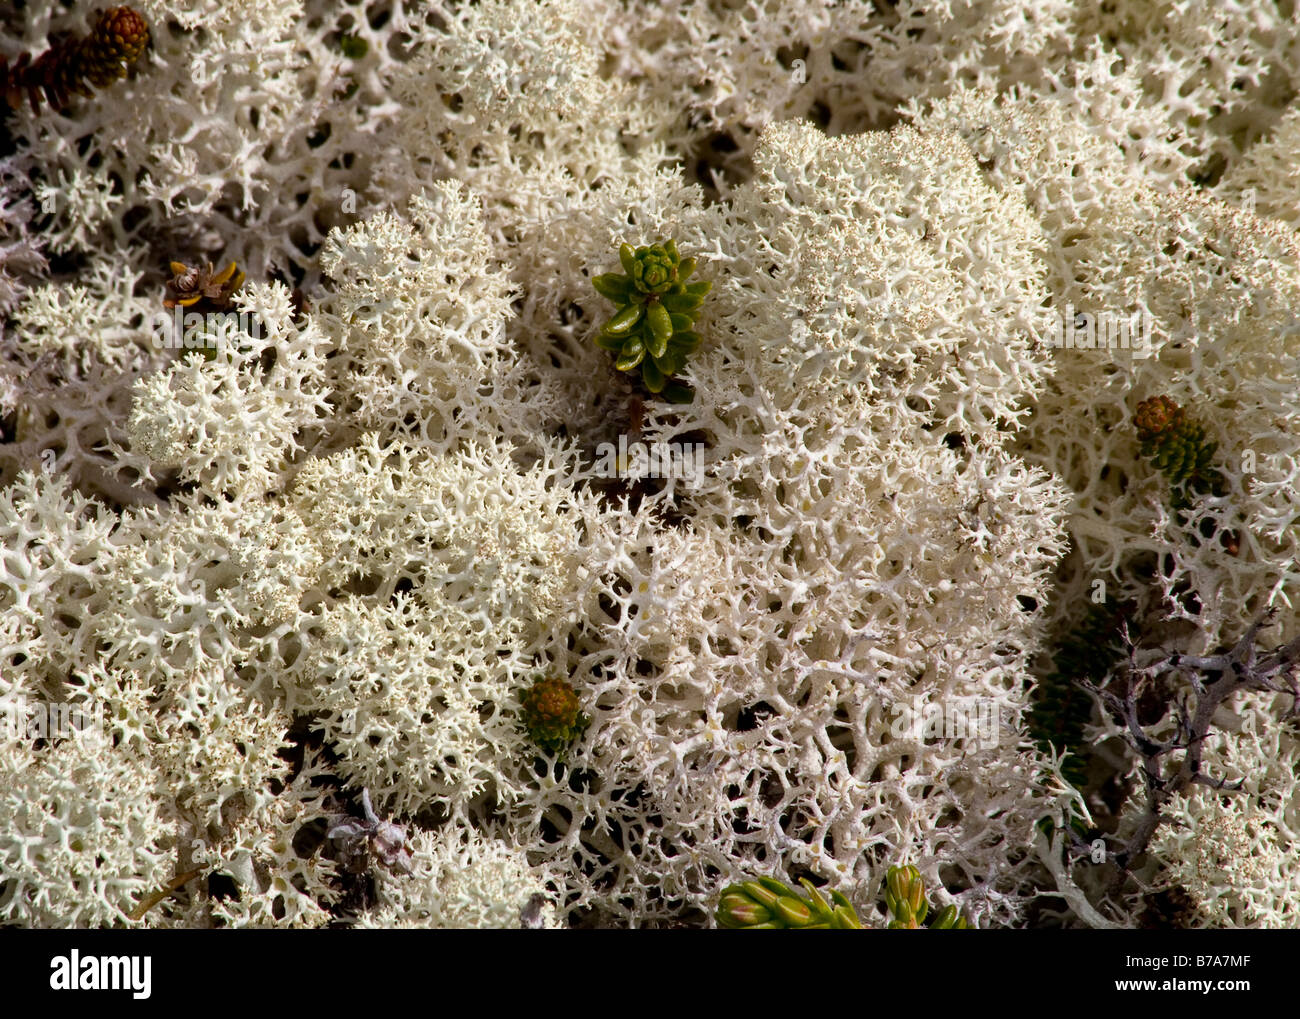 Grigio licheni delle renne anche vero licheni delle renne, (Cladonia rangiferina, Cladonia stellaris), tundra alpina, Chilkoot Trail/Pass, Foto Stock